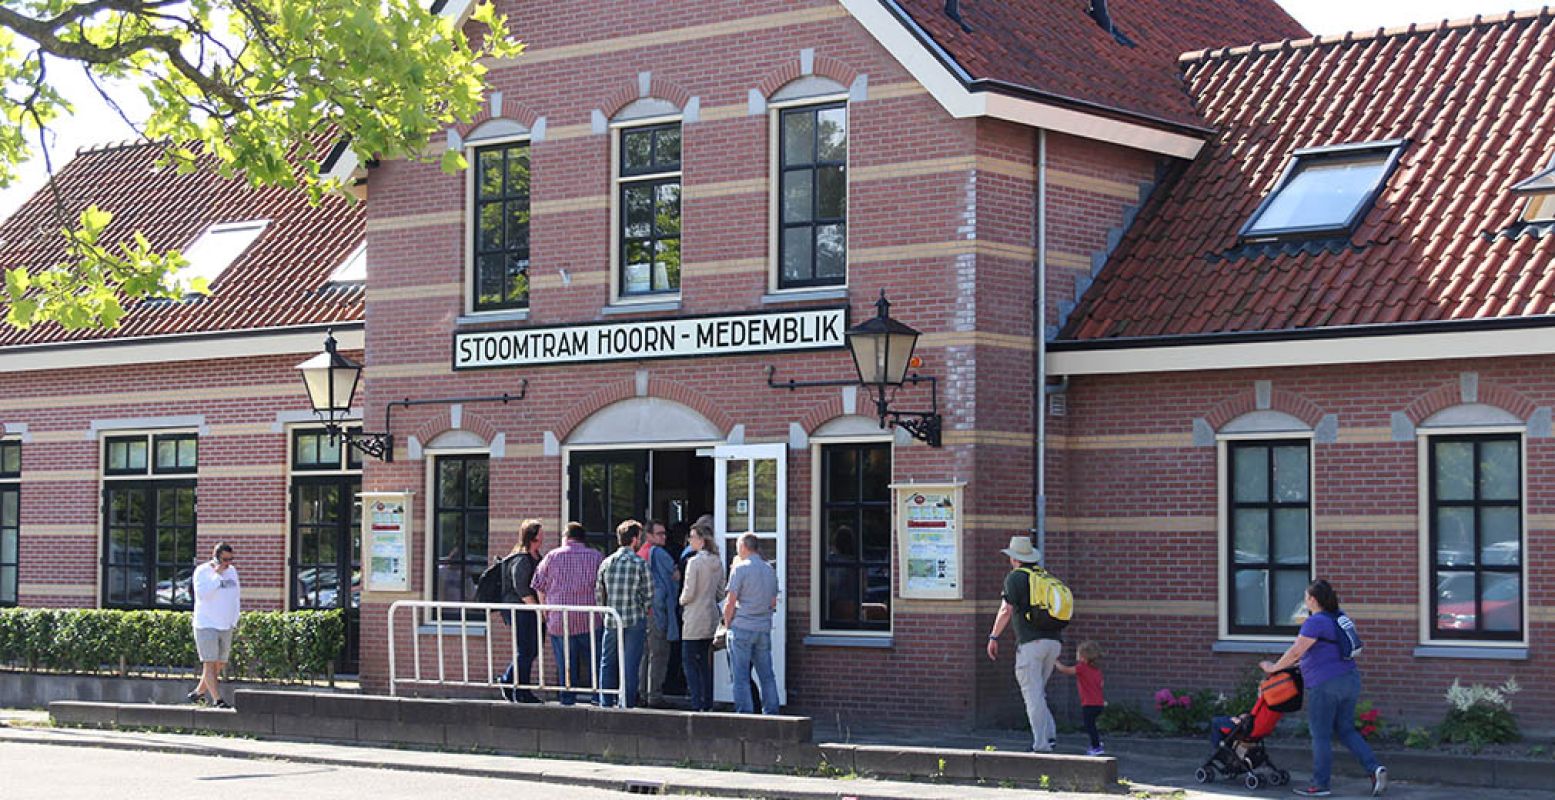 Museumstoomtram Hoorn-Medemblik heeft een eigen, historisch station naast het NS-station van Hoorn. Foto: DagjeWeg.NL.